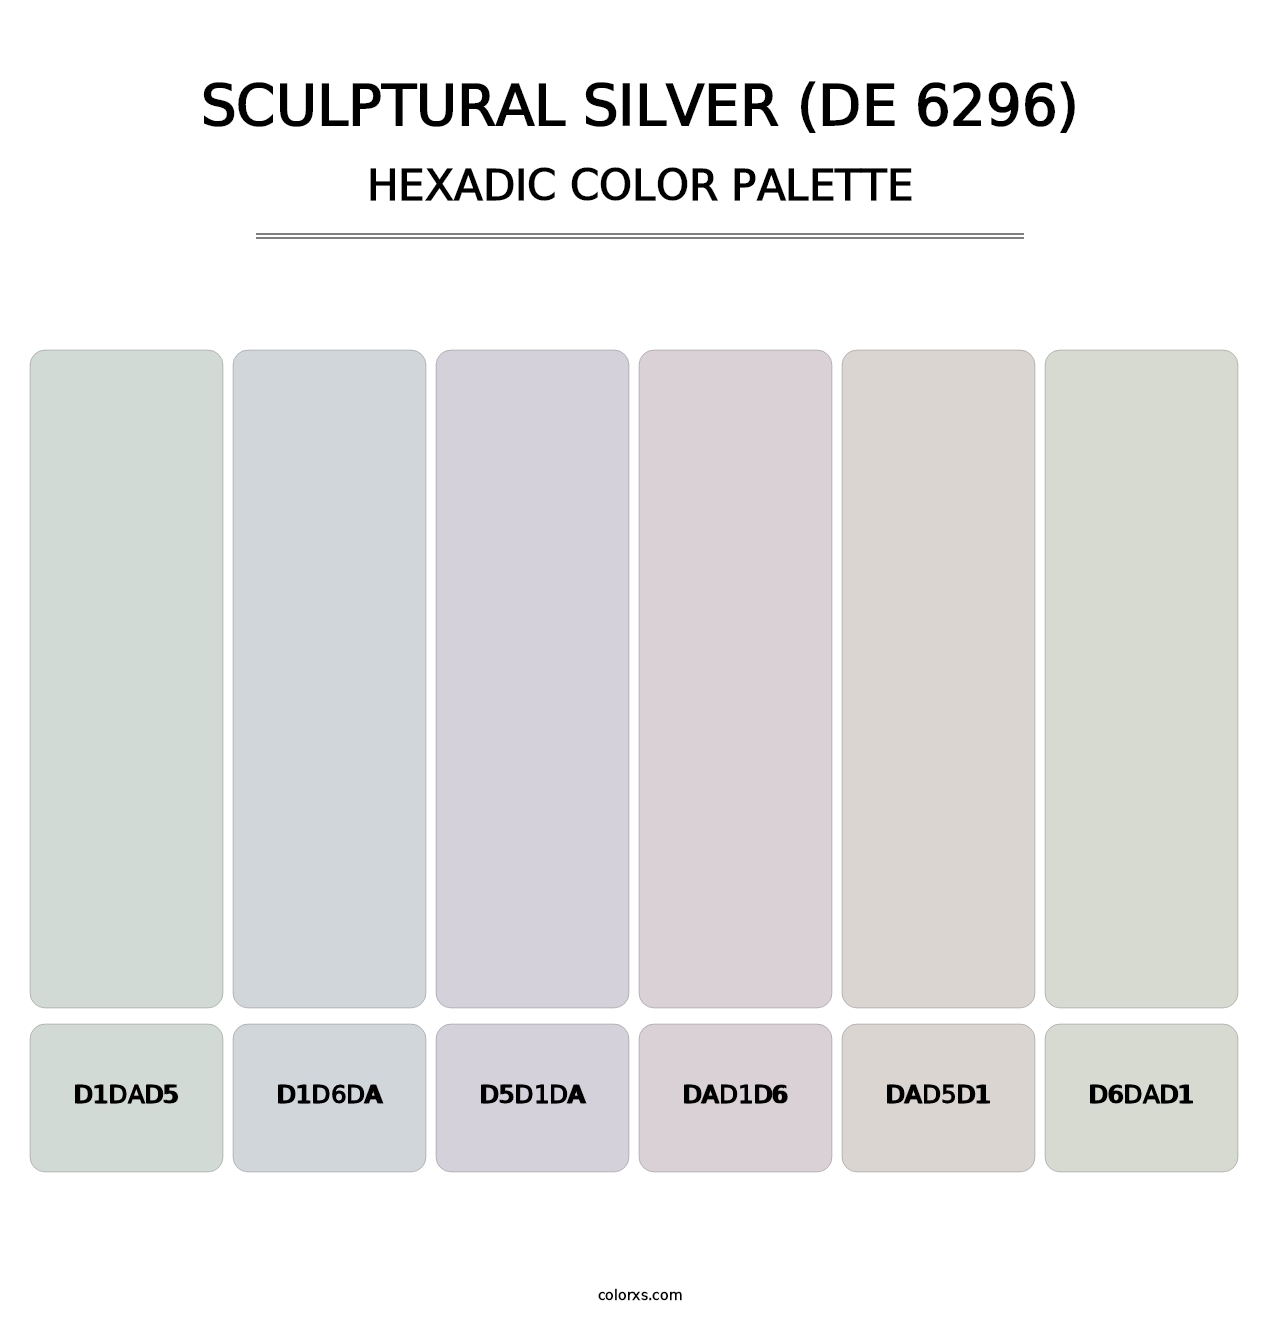 Sculptural Silver (DE 6296) - Hexadic Color Palette